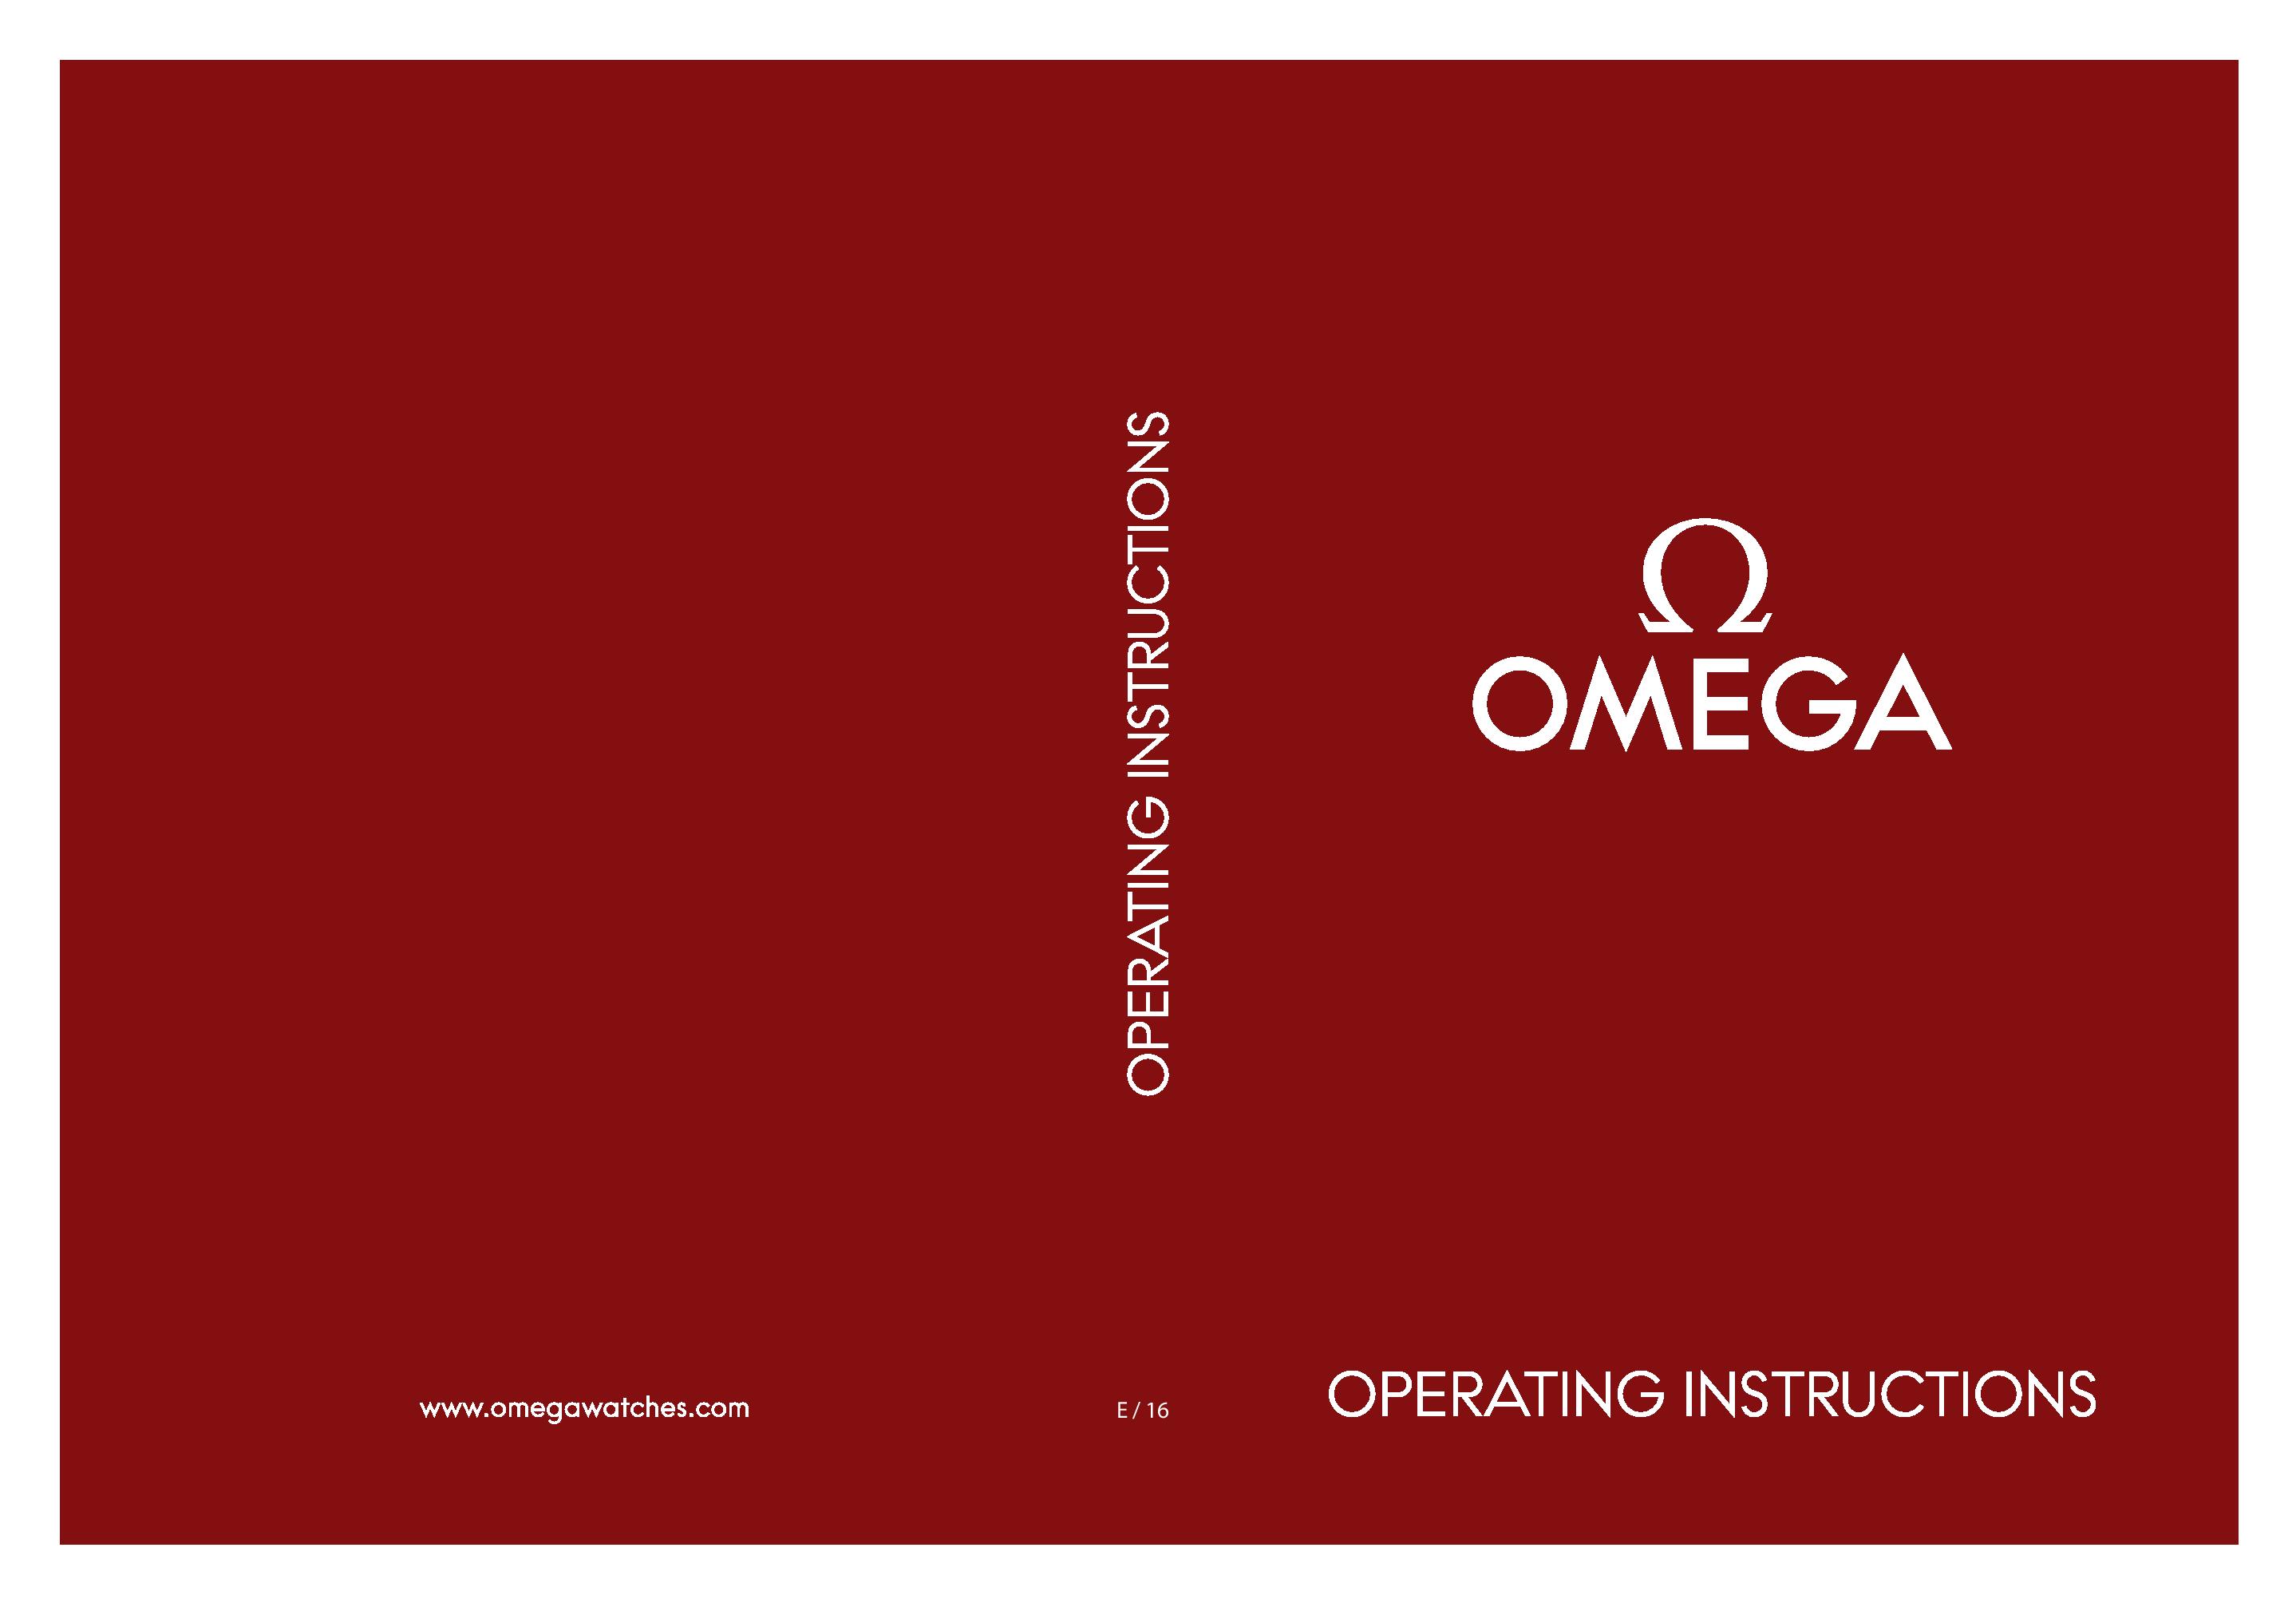 omega speedmaster instructions